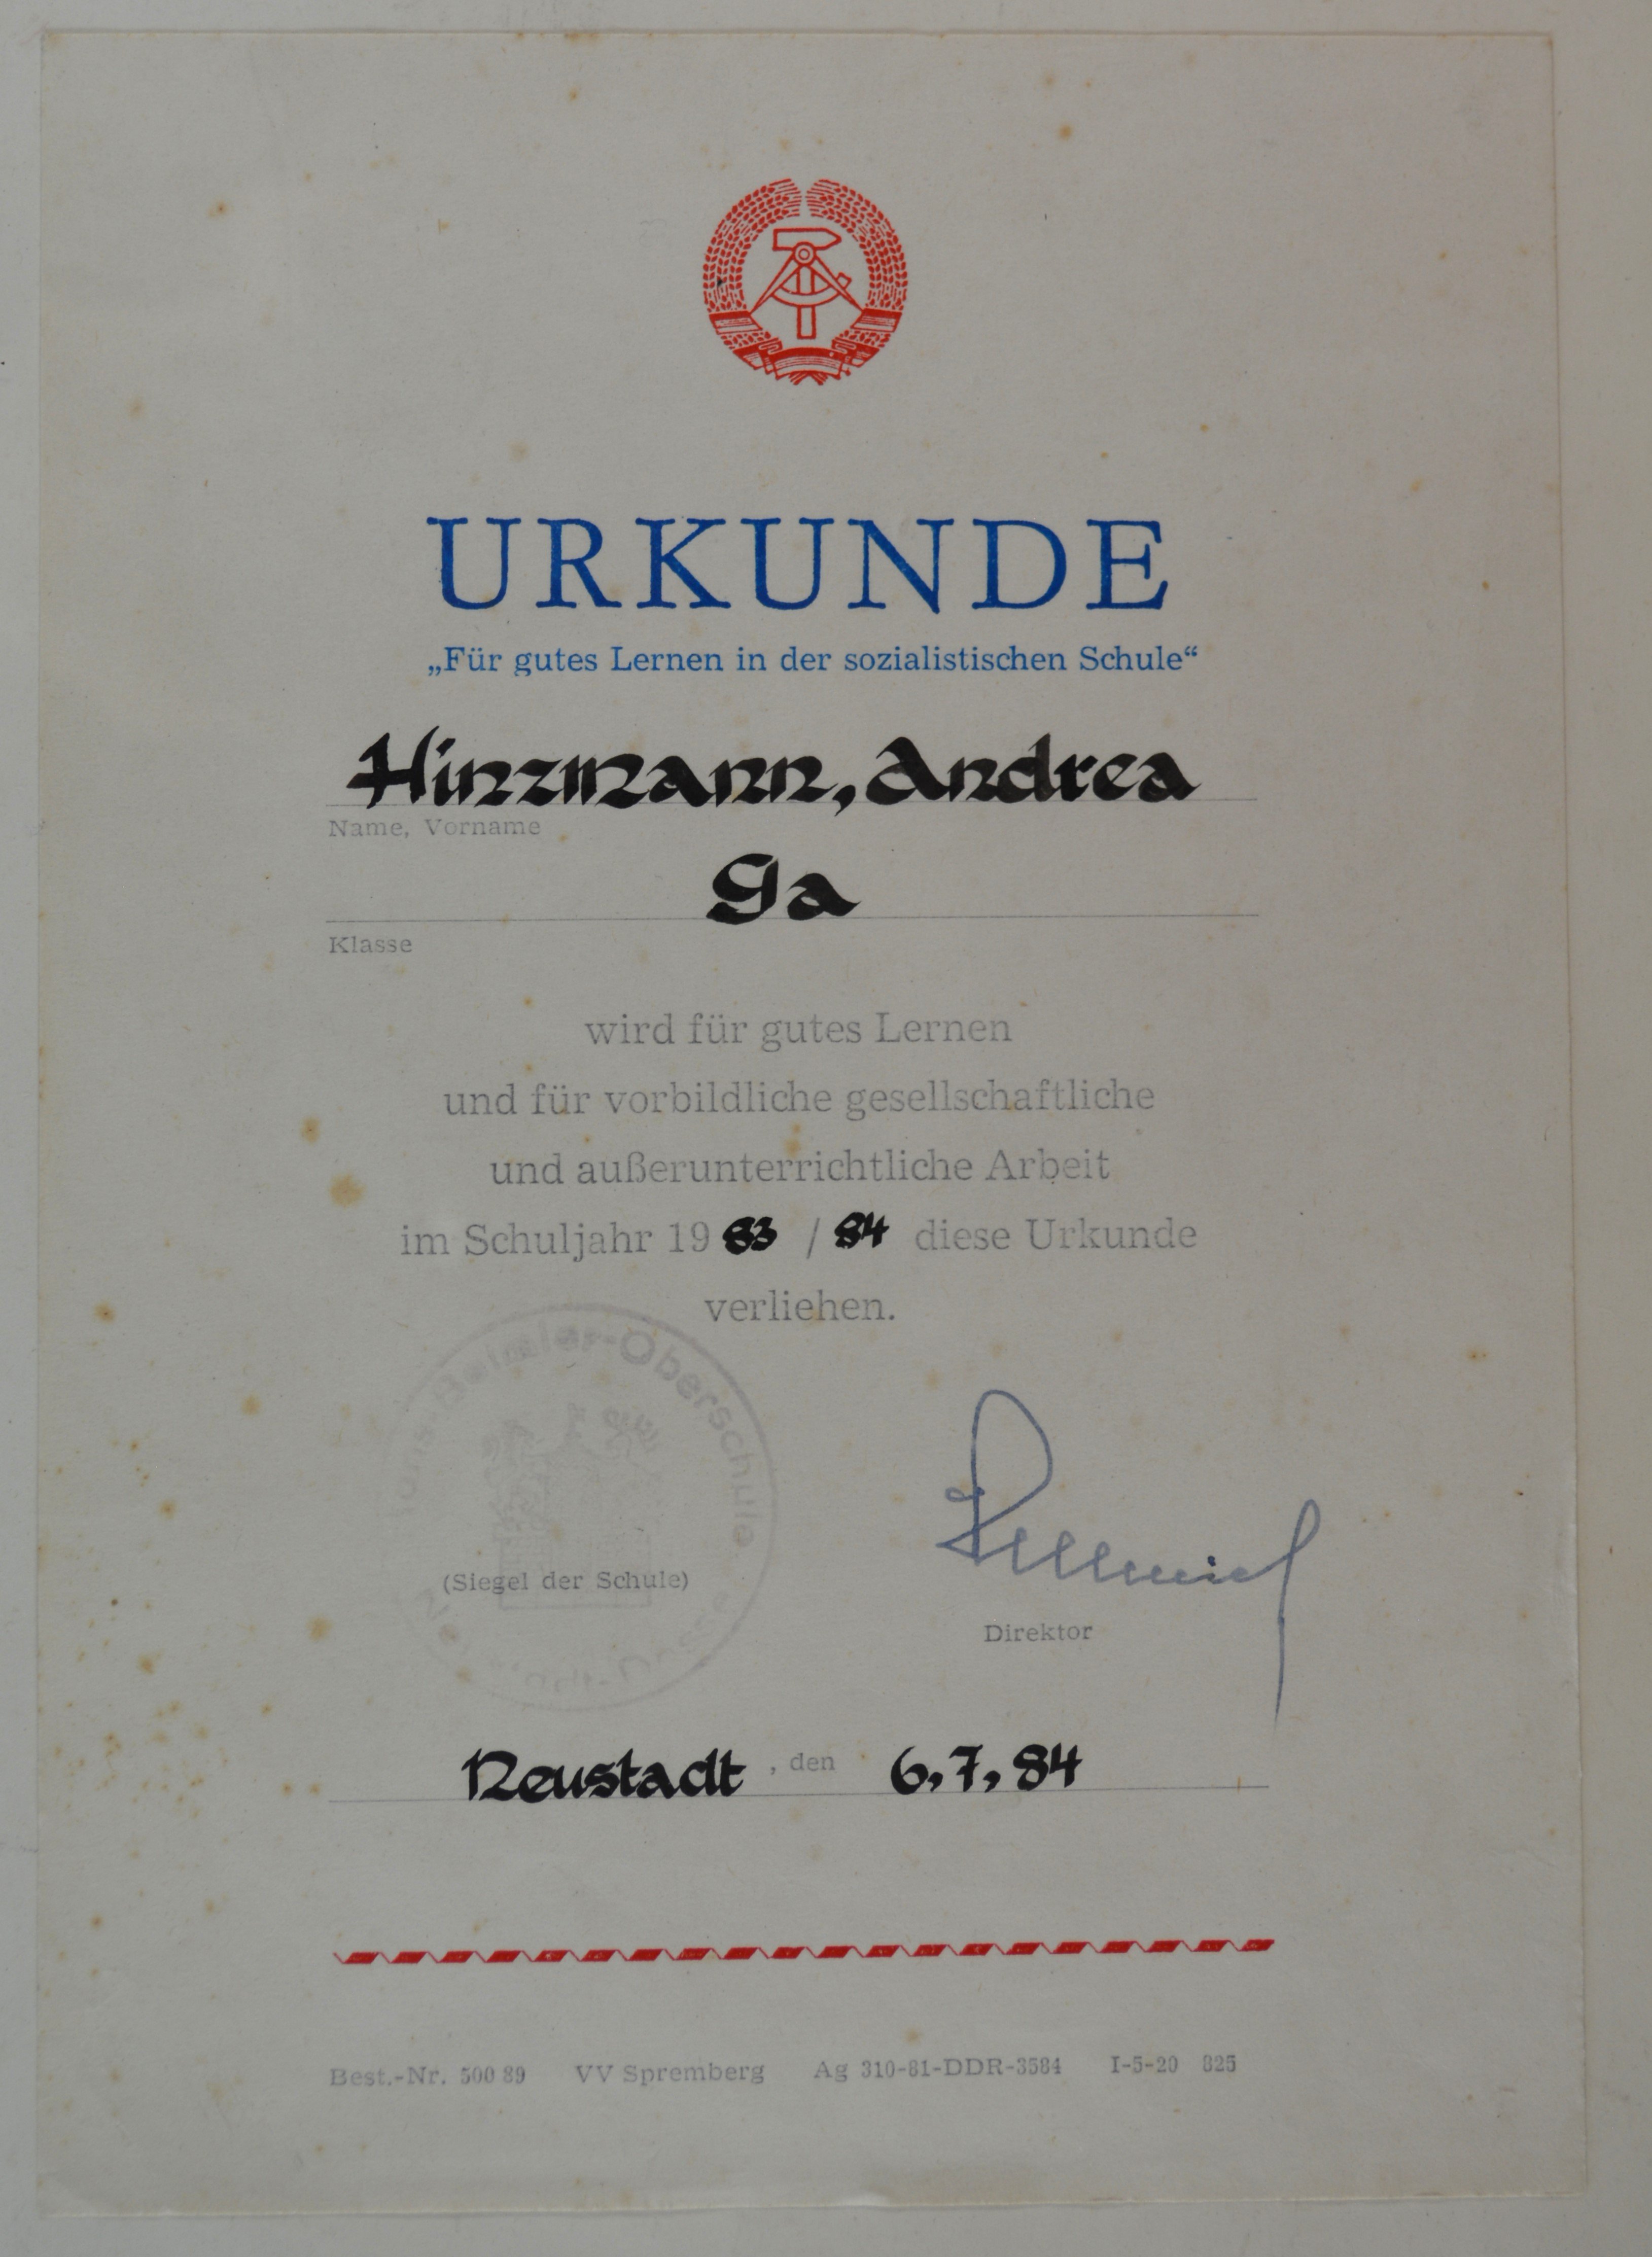 Urkunde "Für gutes Lernen in der sozialistischen Schule" (DDR Geschichtsmuseum im Dokumentationszentrum Perleberg CC BY-SA)